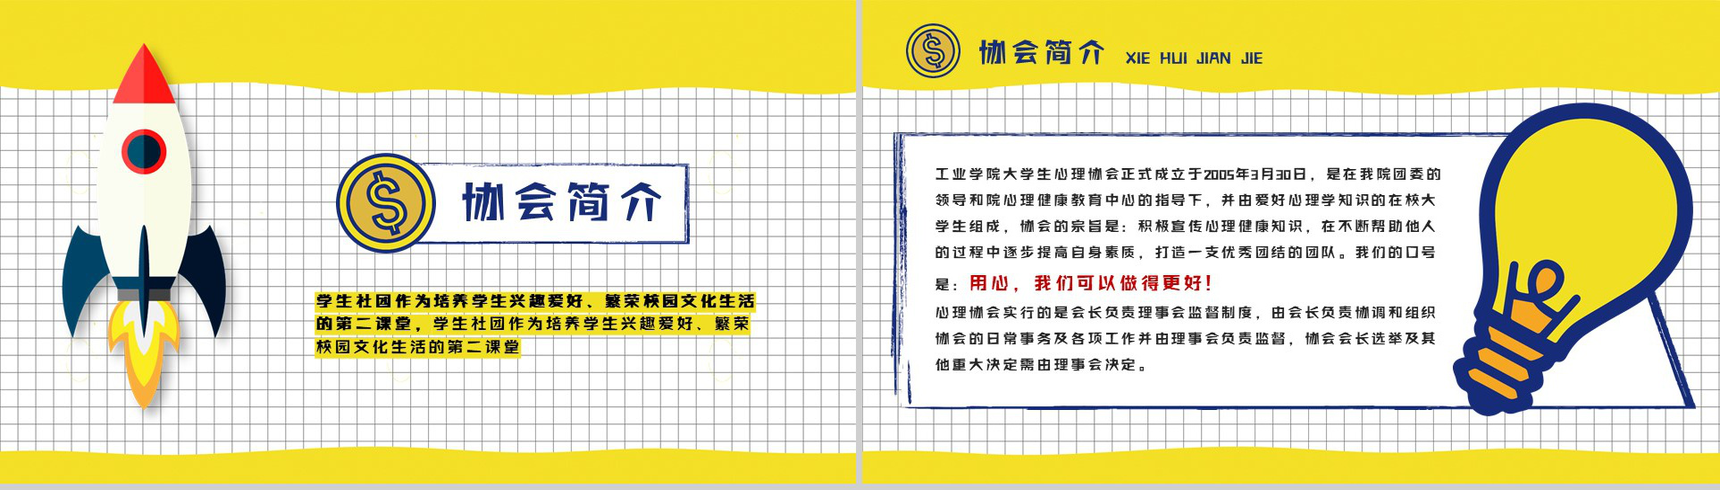 黄色扁平化卡通商务社团招新计划活动方案招聘PPT模板-3